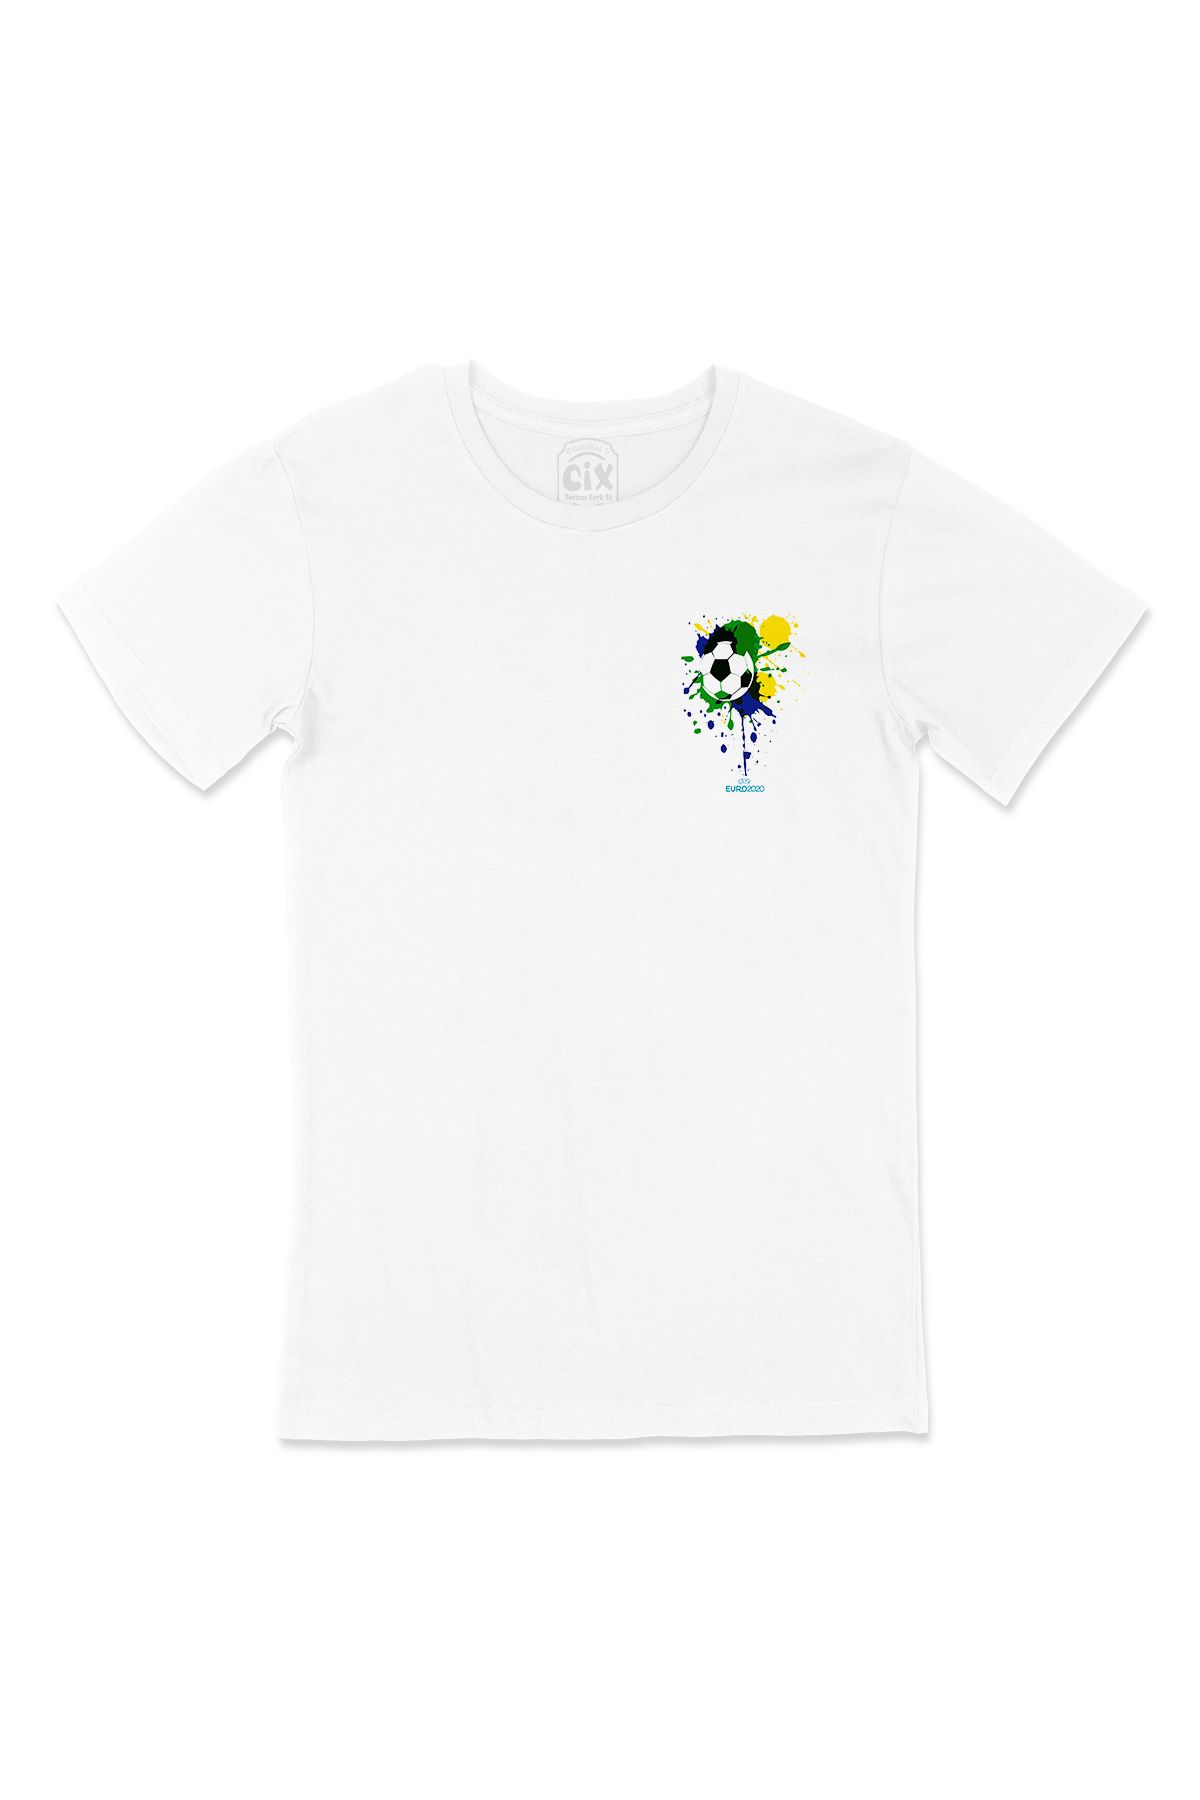 Cix Euro 2020 Futbol Topu Cep Logo Tasarımlı Beyaz Tişört